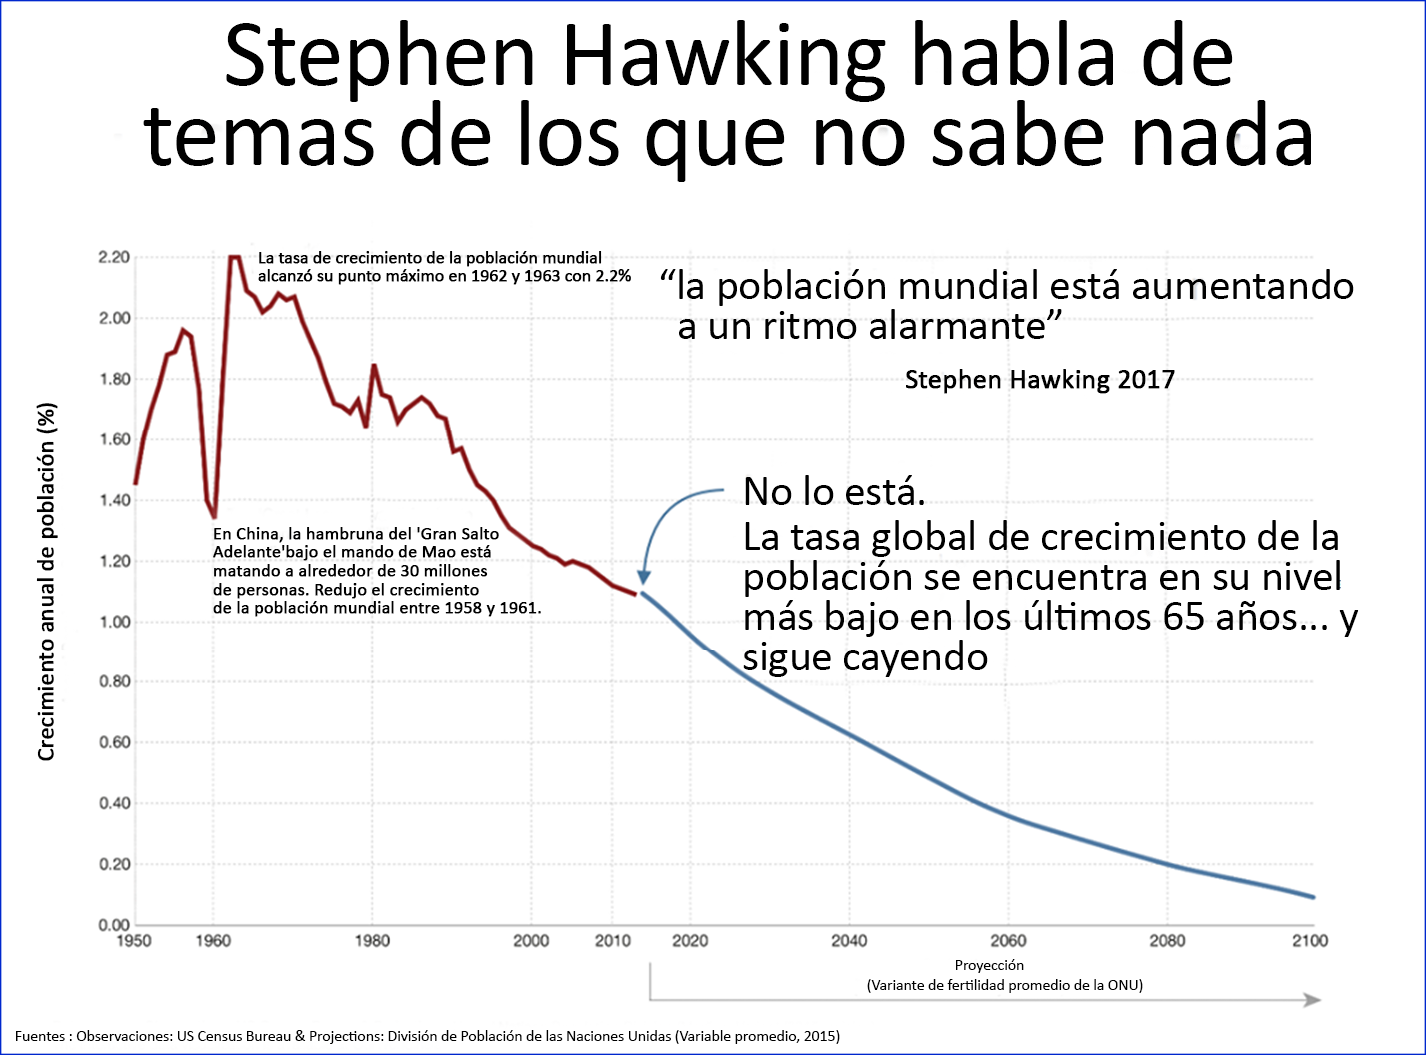 Stephen Hawking habla de temas de los que no sabe nada